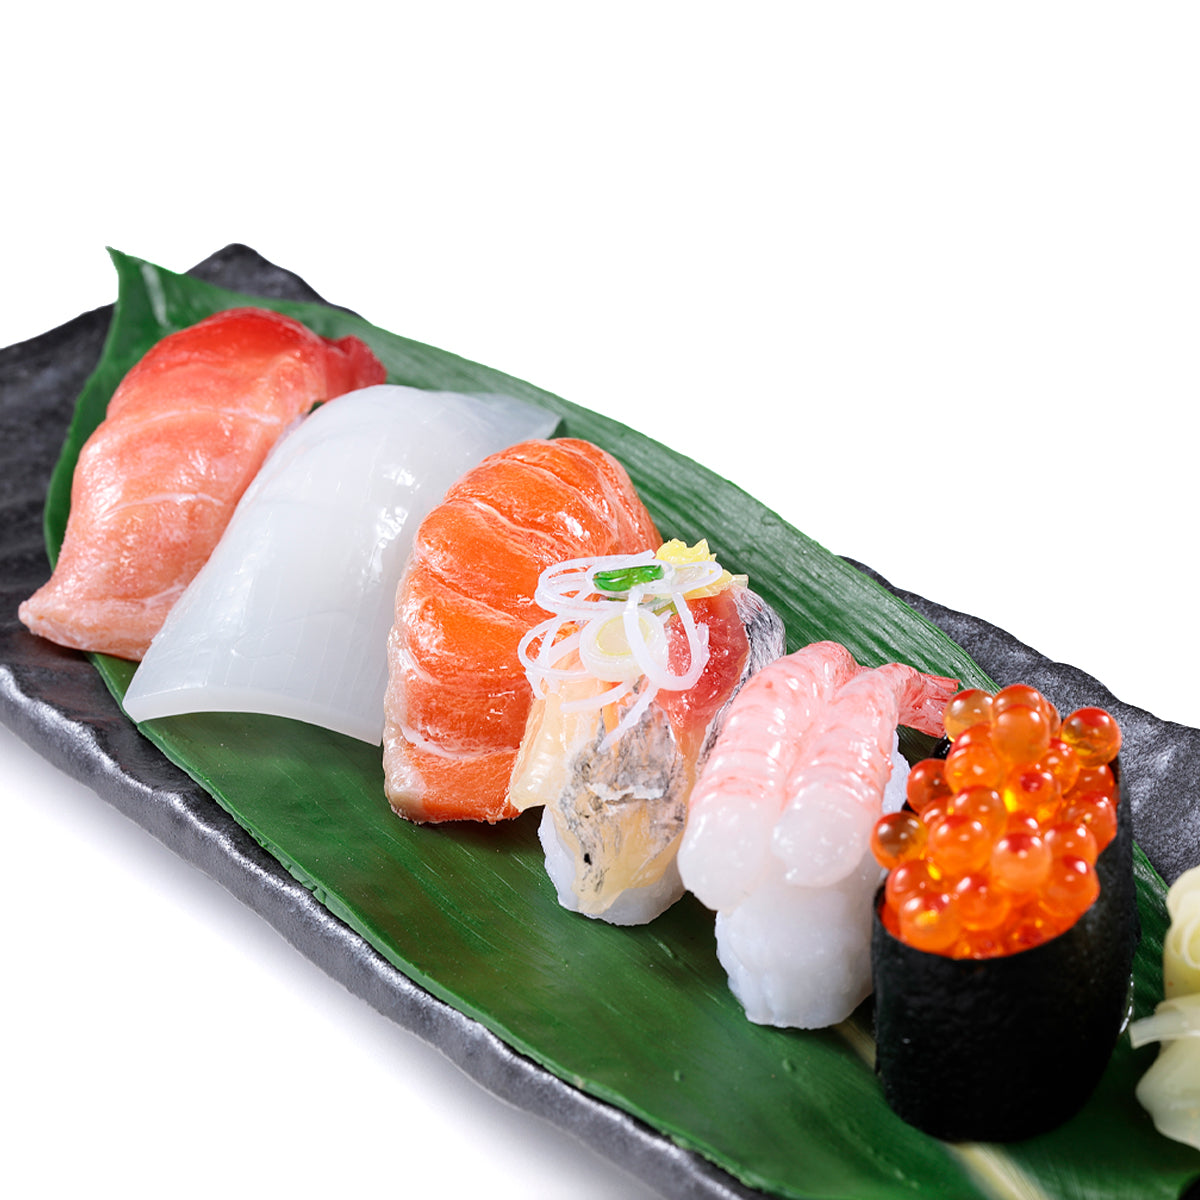 オリジナル食品サンプル「握り寿司」の商品画像です。